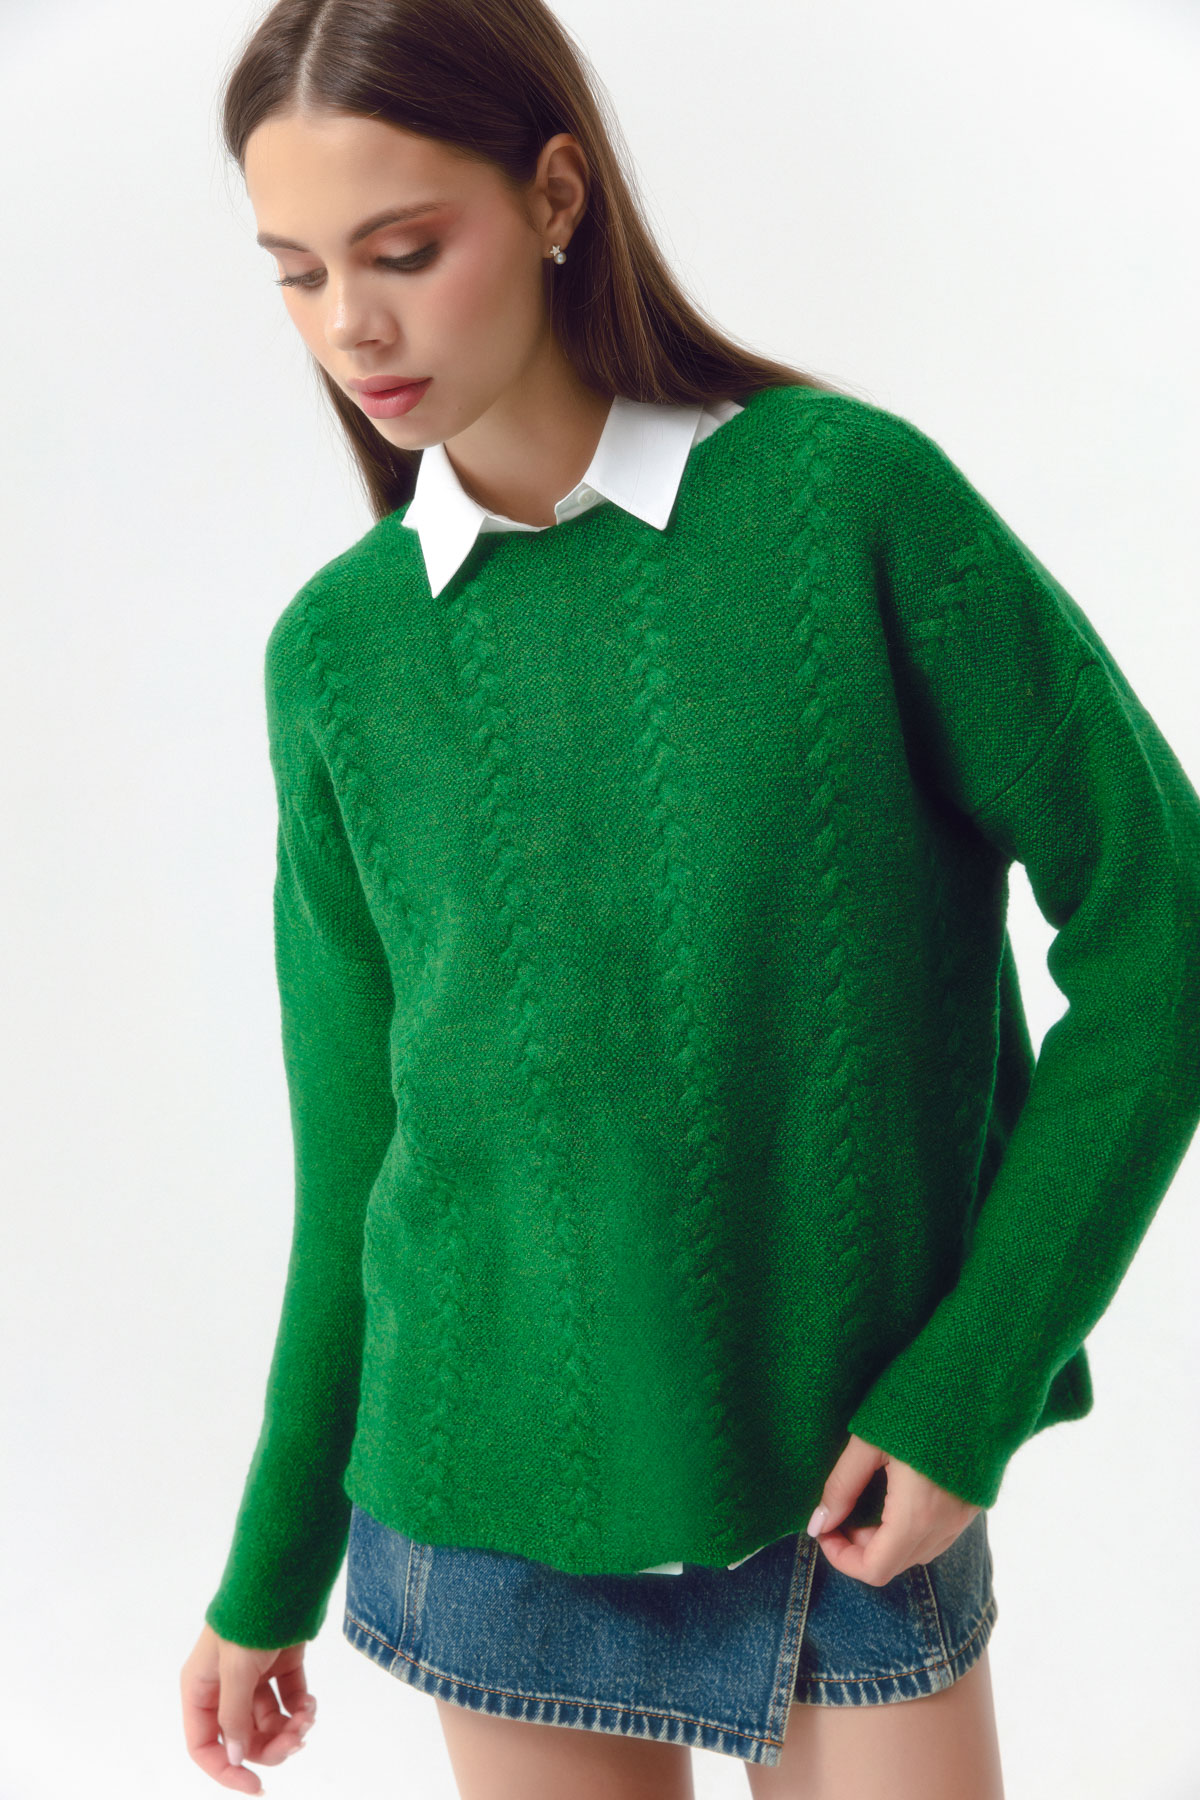 Women's Green Boat Neck Knitwear Sweater